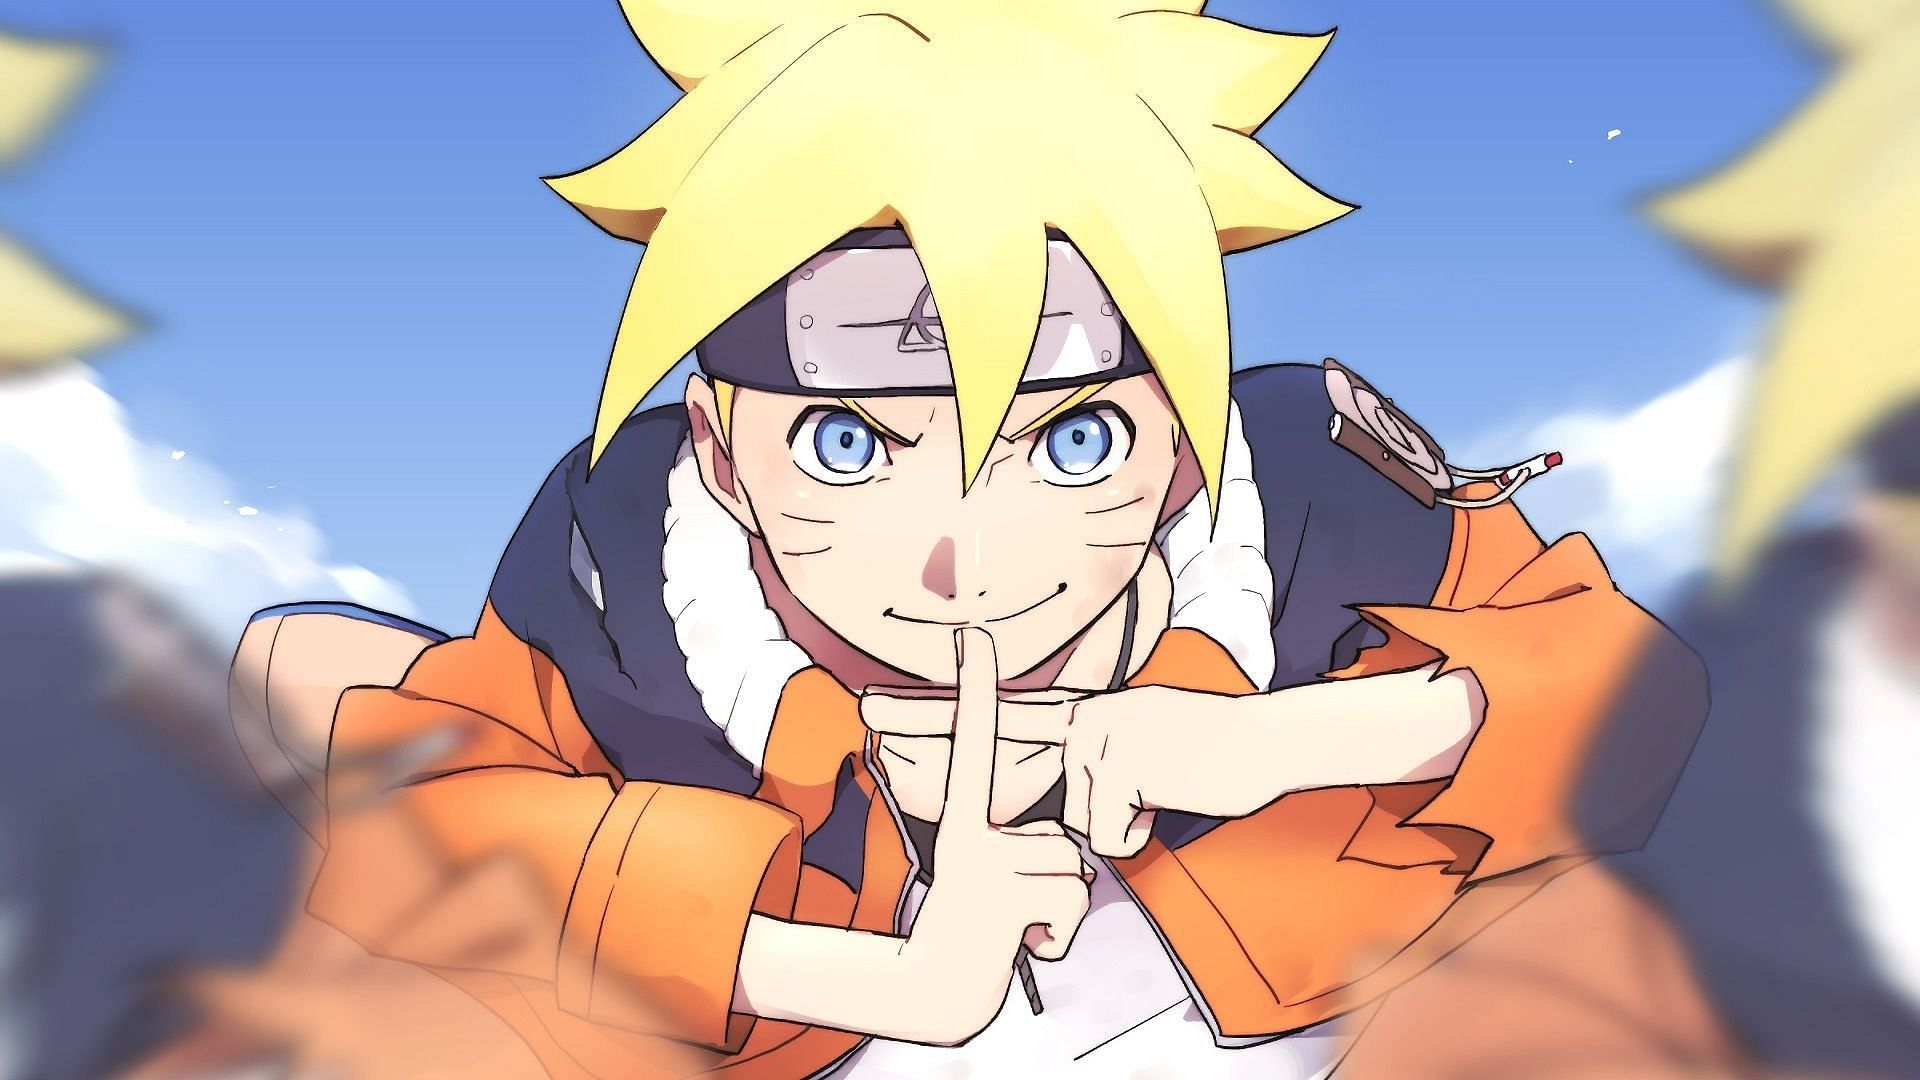 Naruto - NEW BORUTO KEYART!! More info here